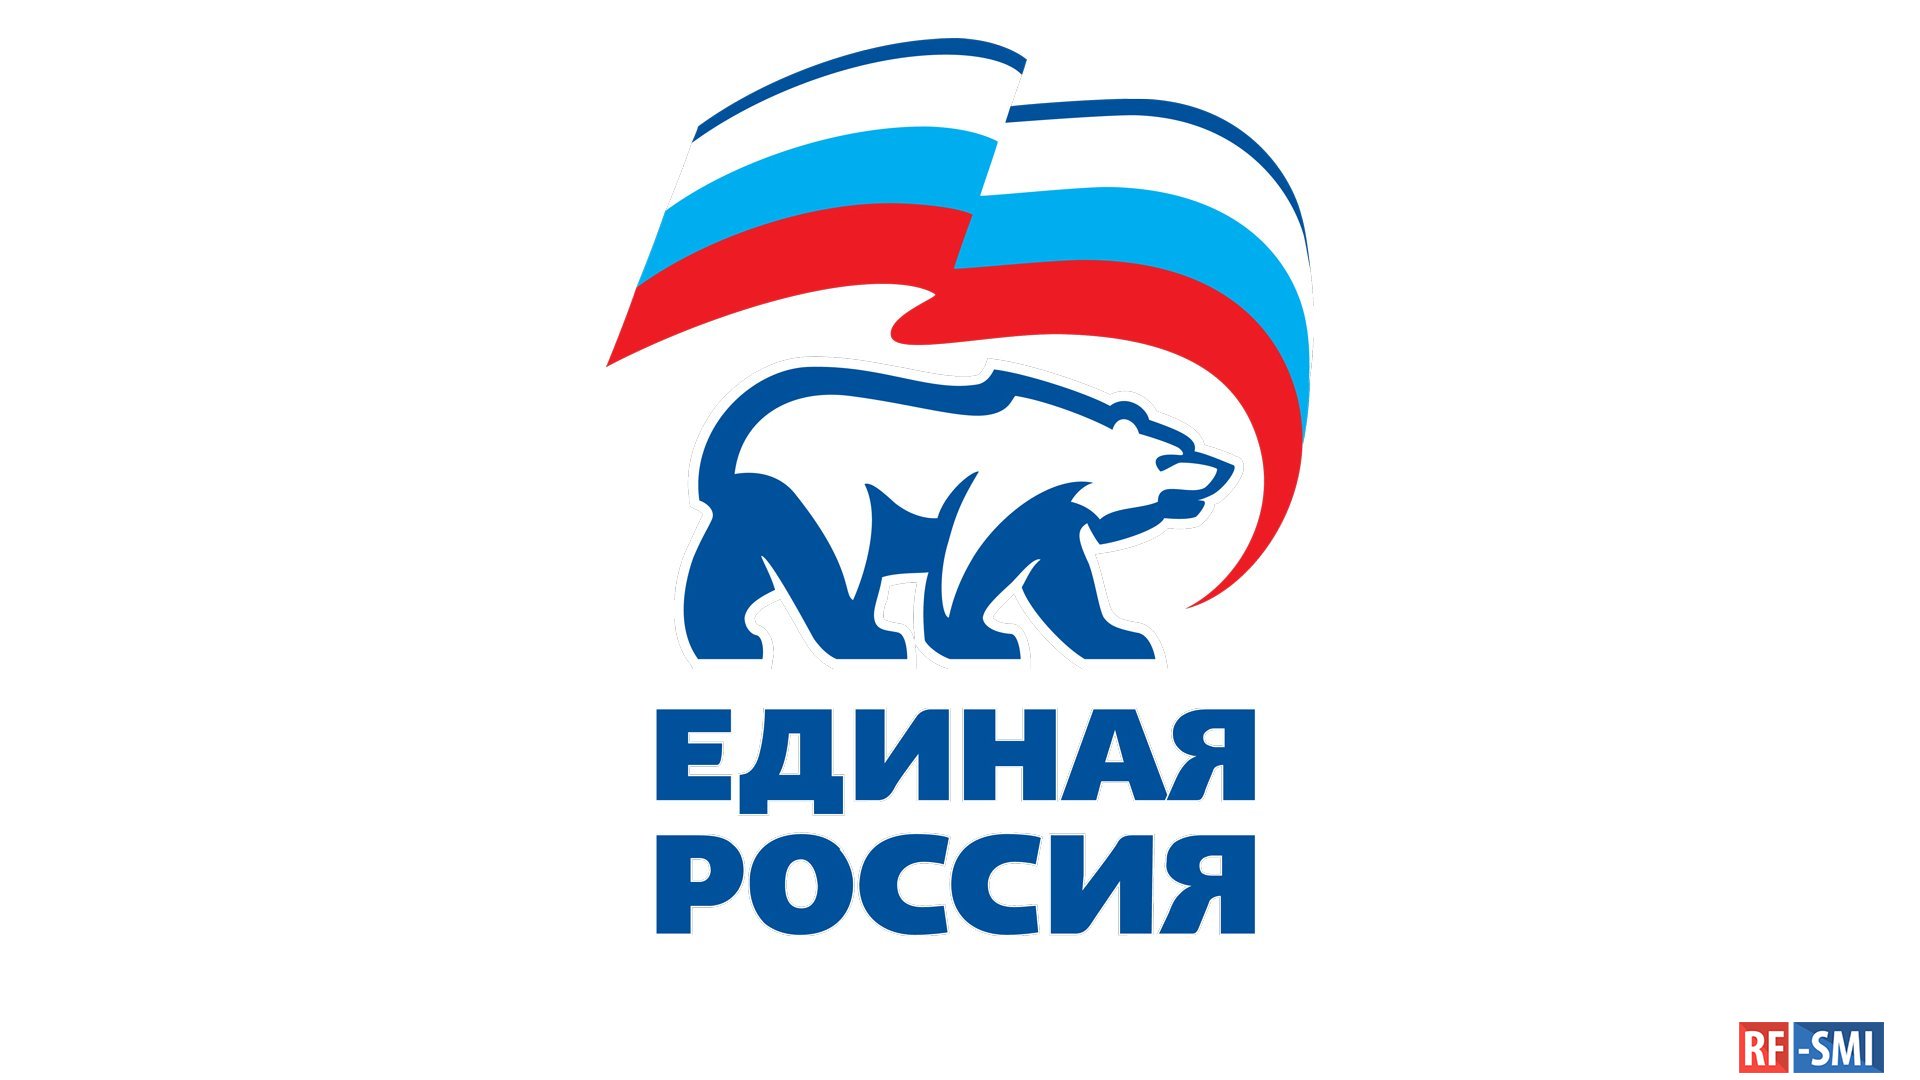 От всего сердца логотип Единая Россия